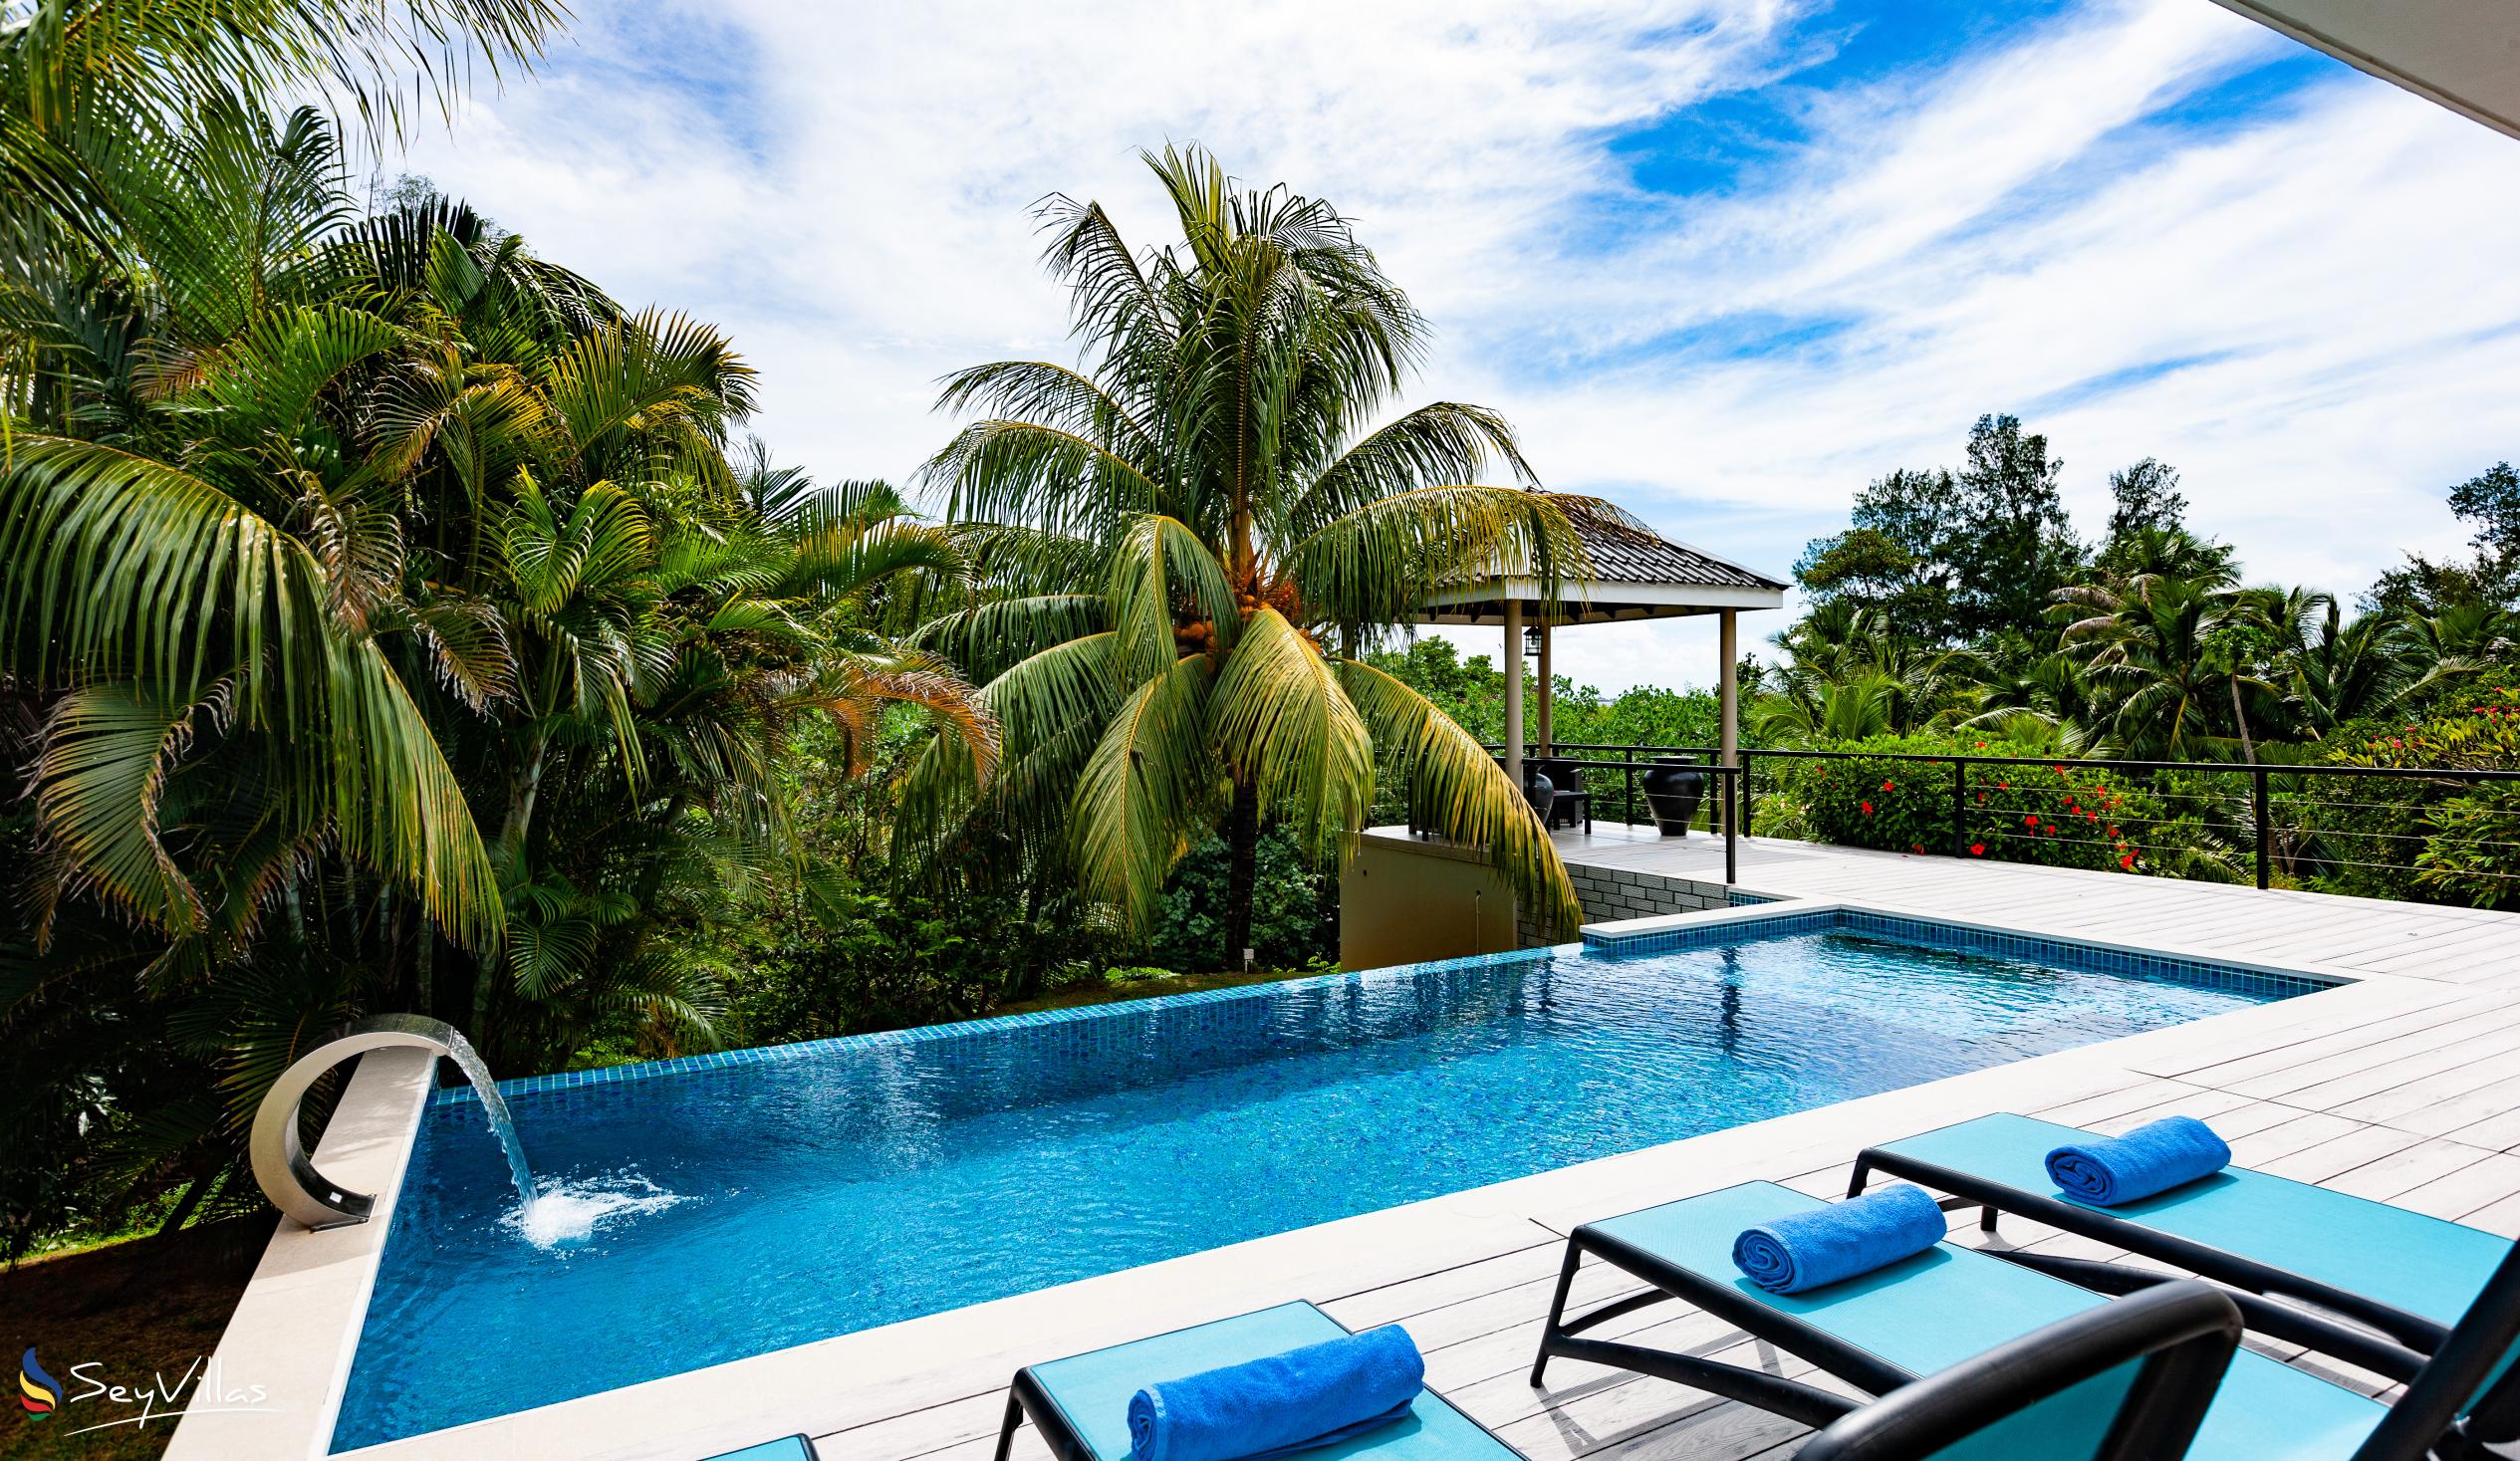 Foto 32: Tranquility Villa - Aussenbereich - Praslin (Seychellen)